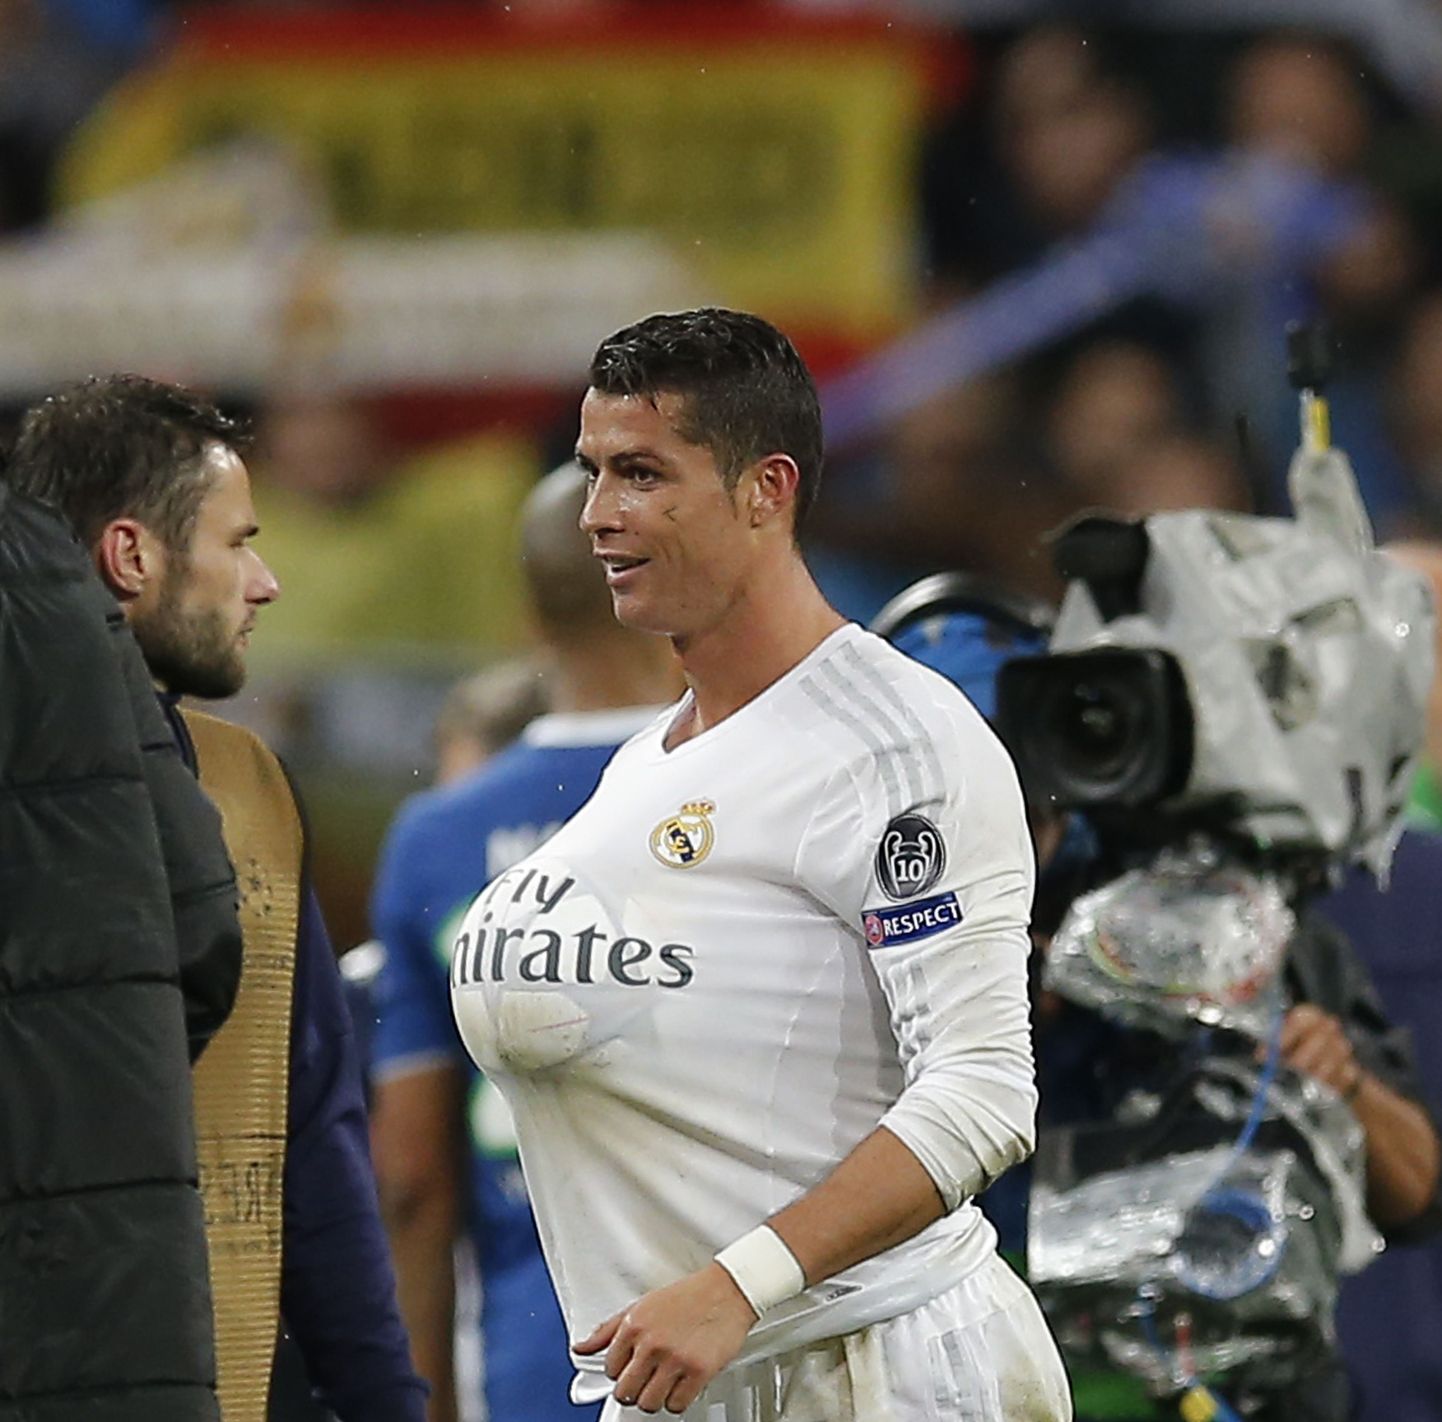 Kübaratriki löönud Cristiano Ronaldo on saanud traditsiooni kohaselt enda kätte mängupalli.